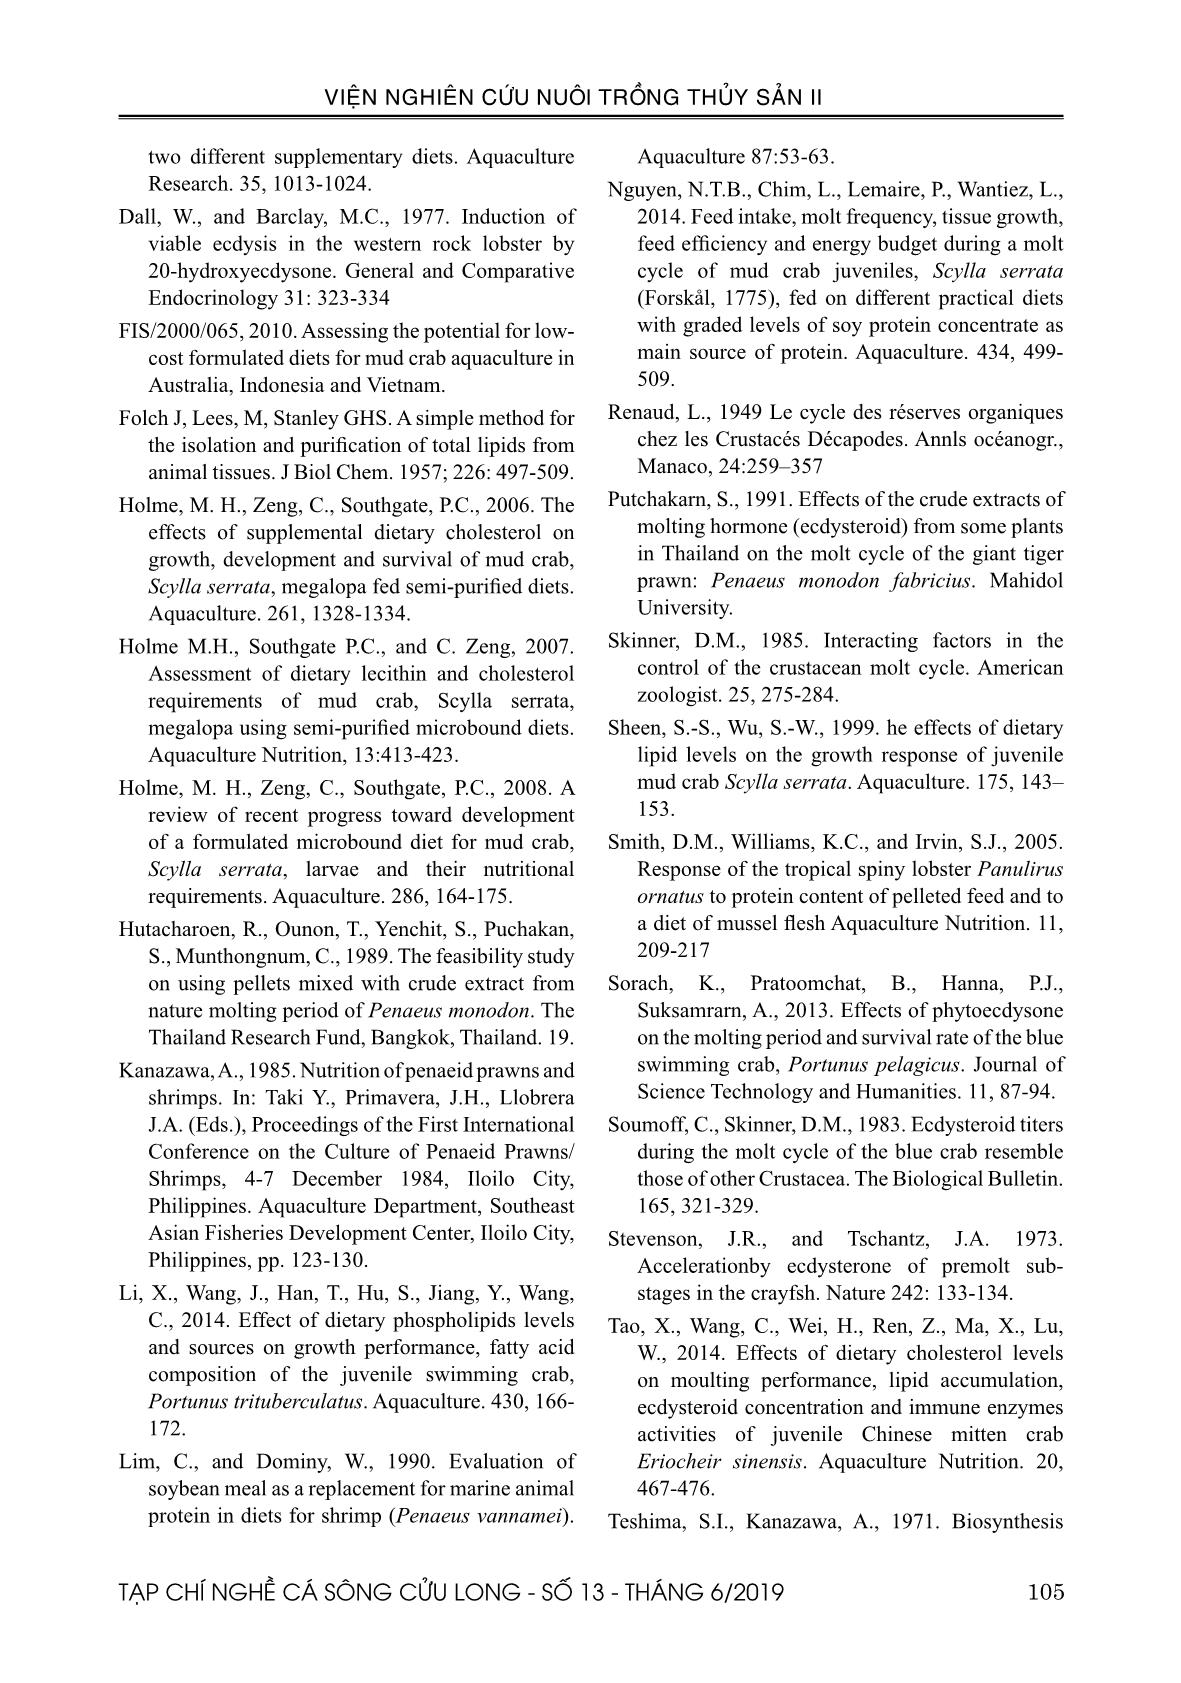 Nghiên cứu bổ sung chế phẩm Ecdysone tạo cua (Scylla serrata) lột trang 10